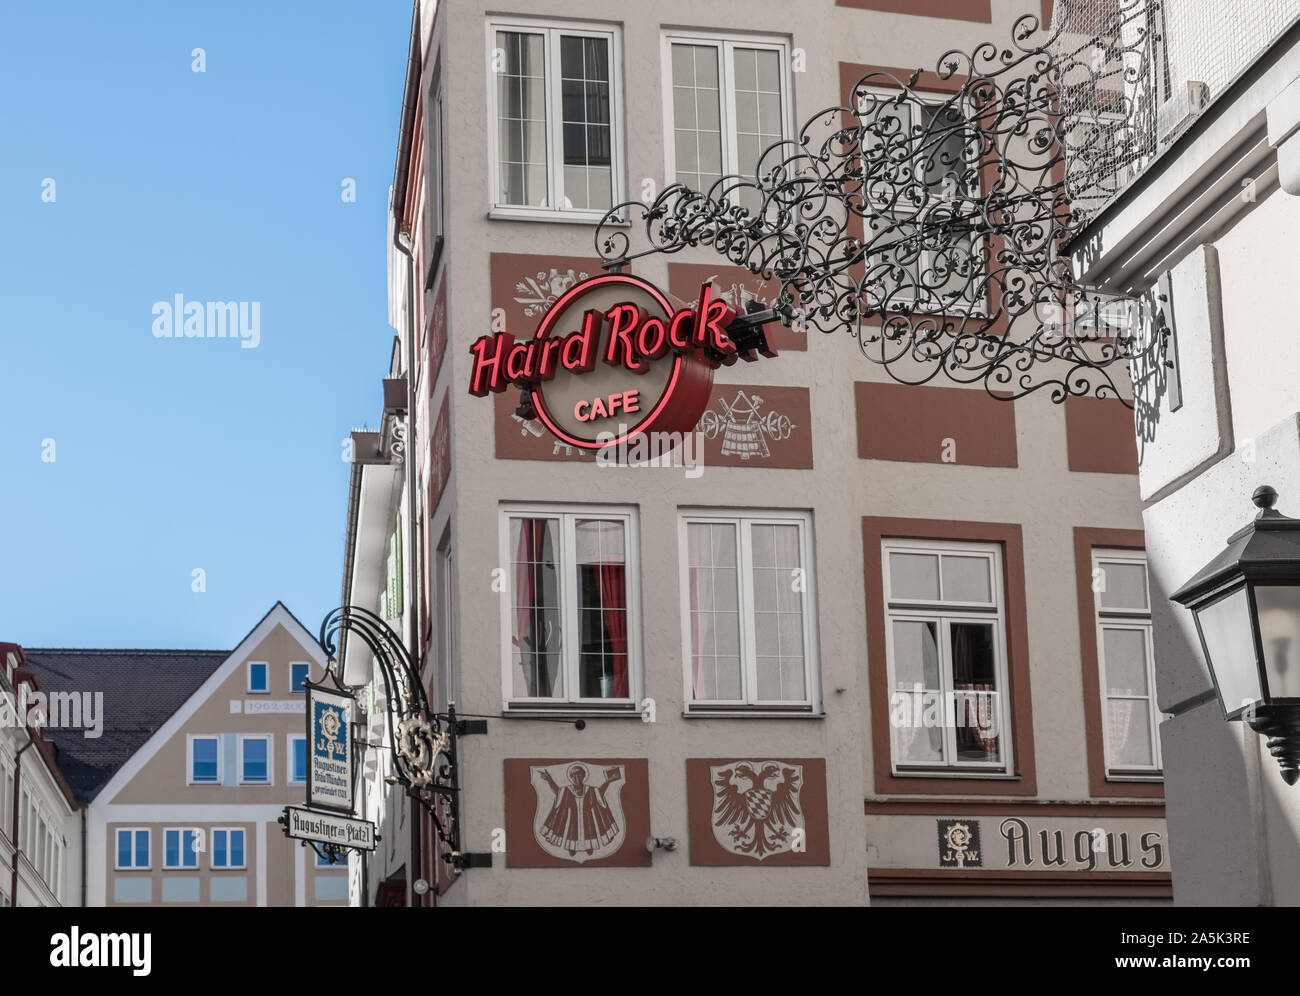 Hard Rock Cafe segno esteriore, Platzl 1, Monaco di Baviera, Germania Foto Stock